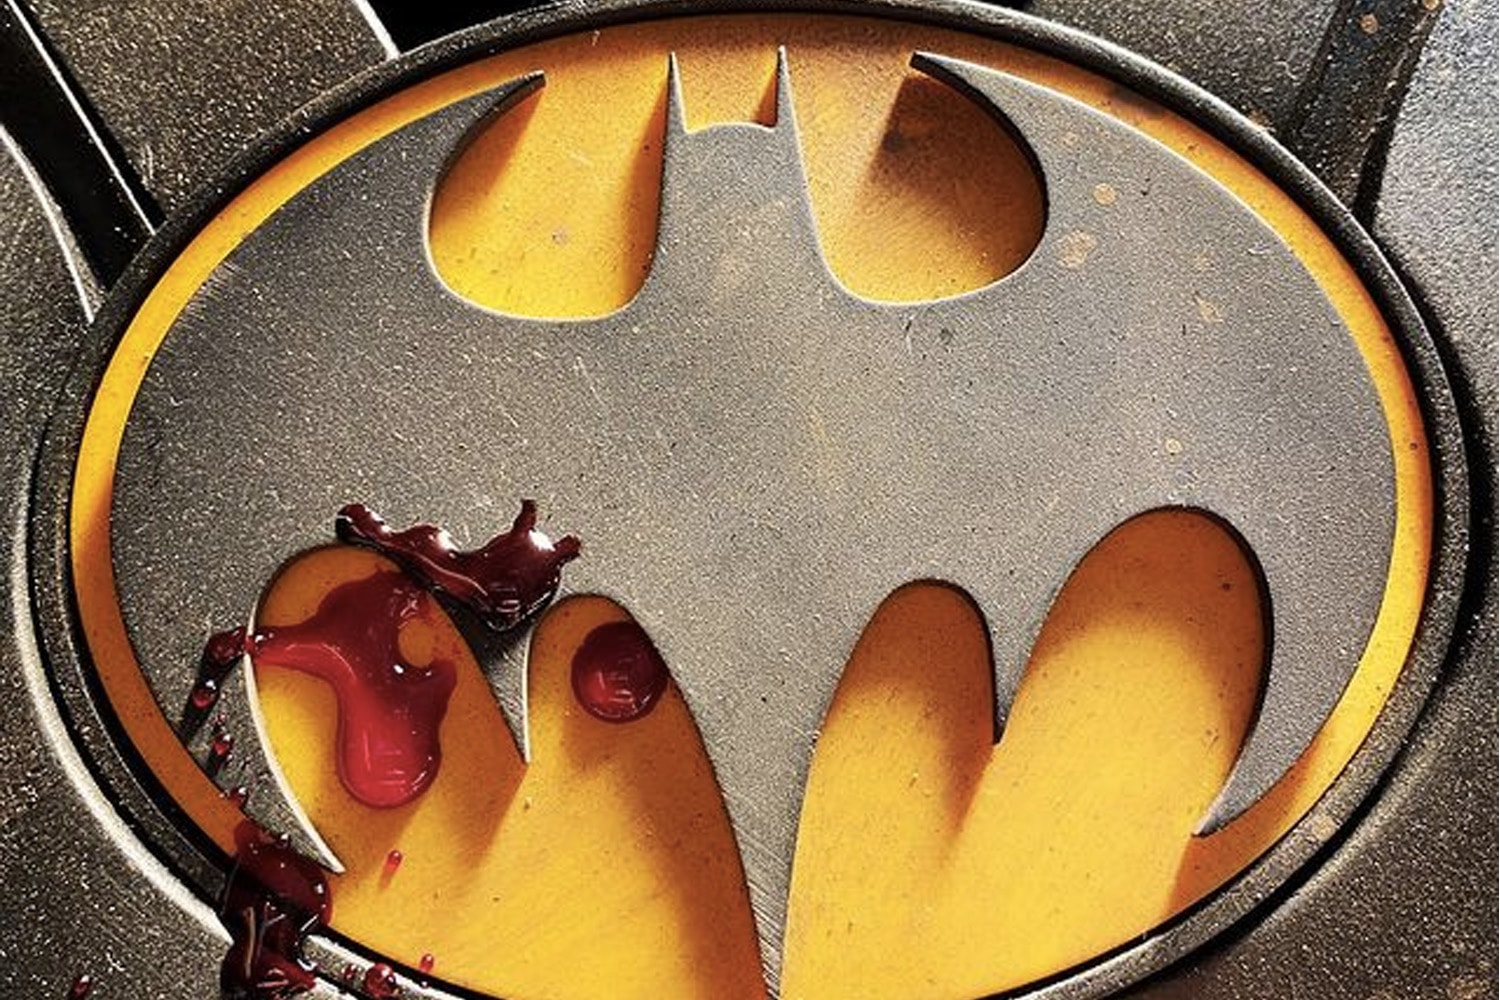 《閃電俠 The Flash》導演曝光 Michael Keaton 版本「蝙蝠俠」最新戰衣 Logo